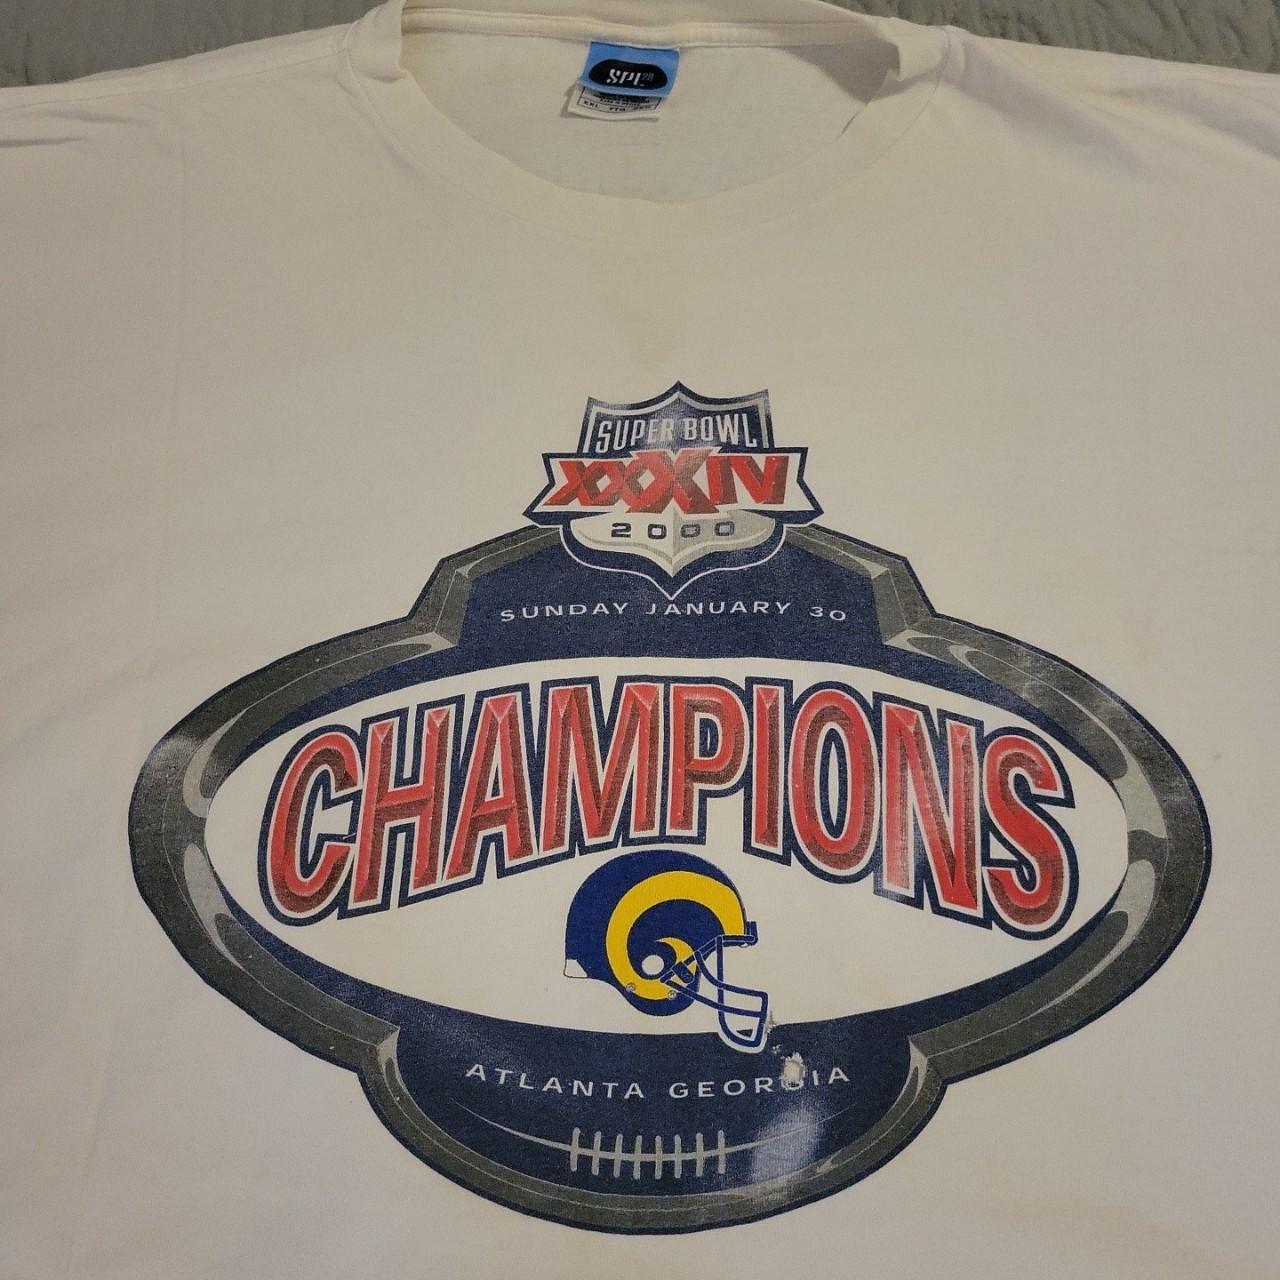 Vintage St Louis Rams Super Bowl Champions T Shirt Size XL